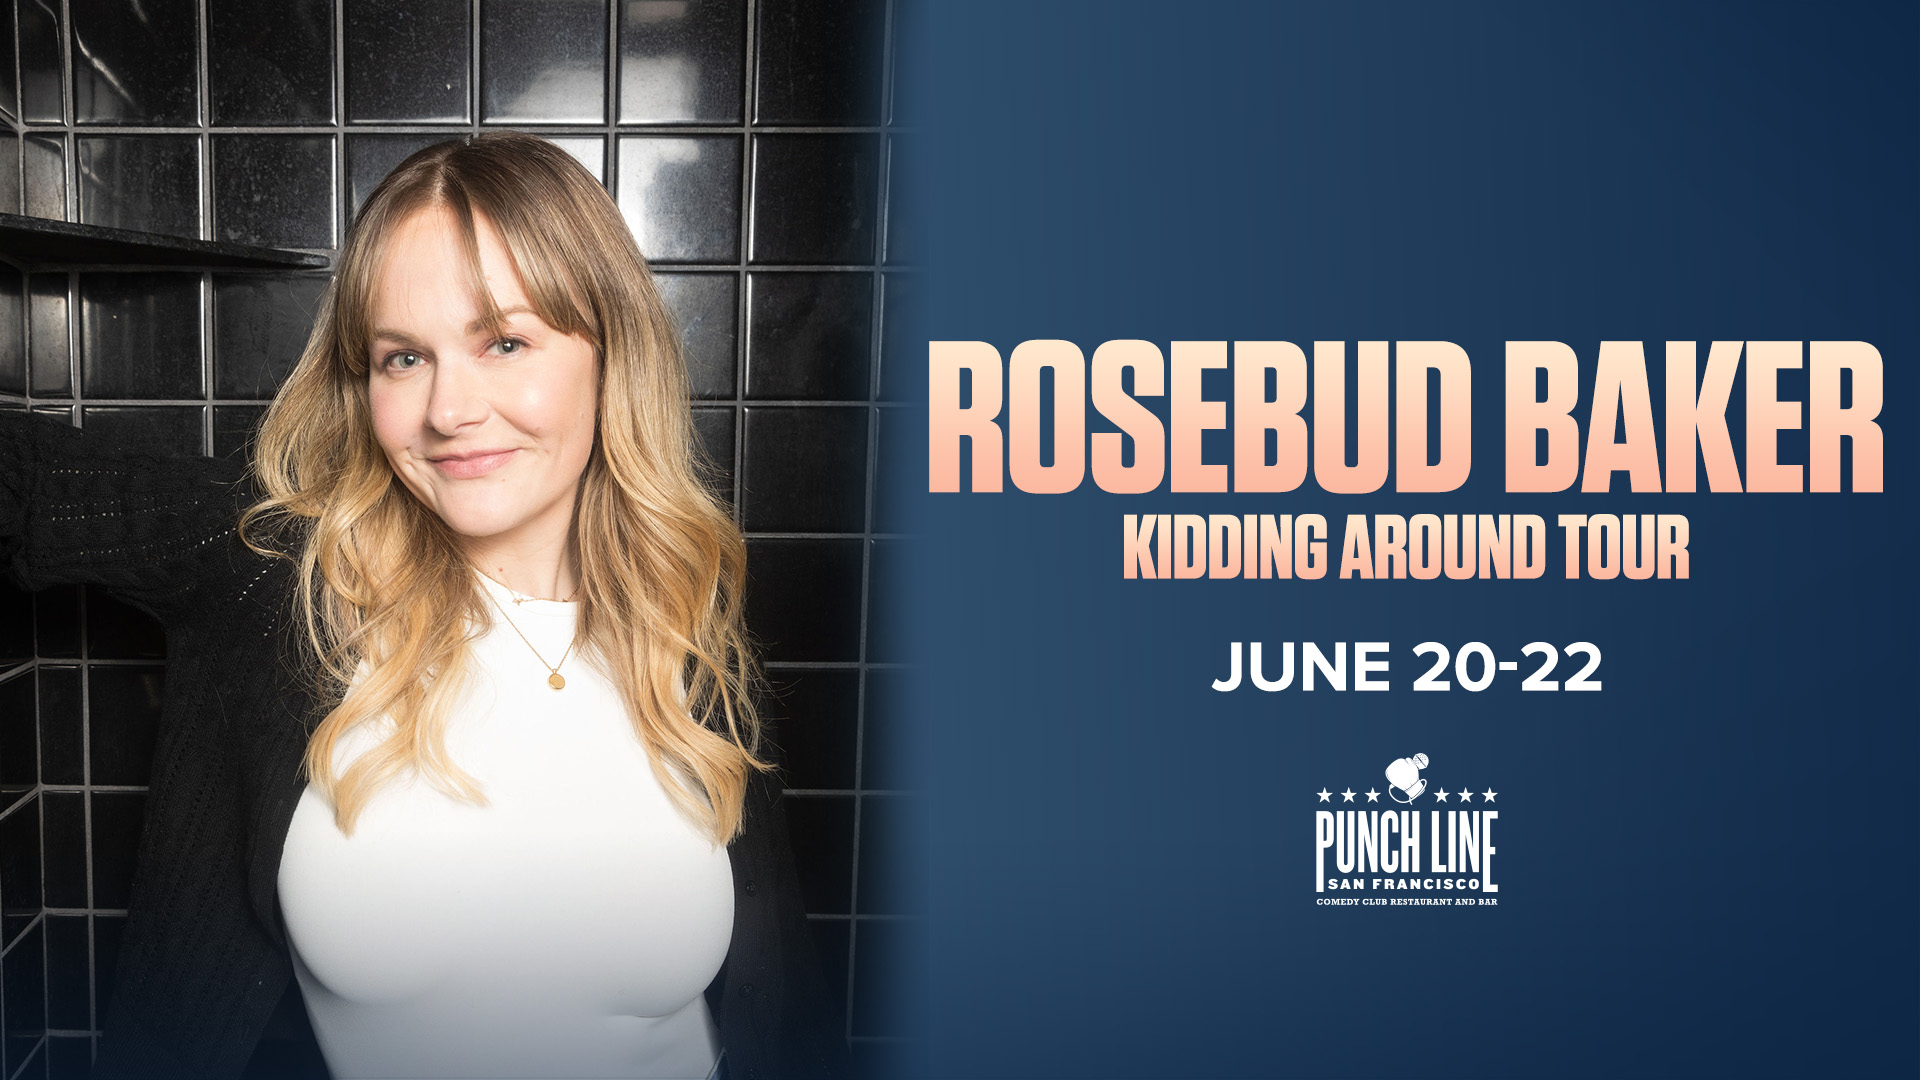 Rosebud Baker: Kidding Around Tour